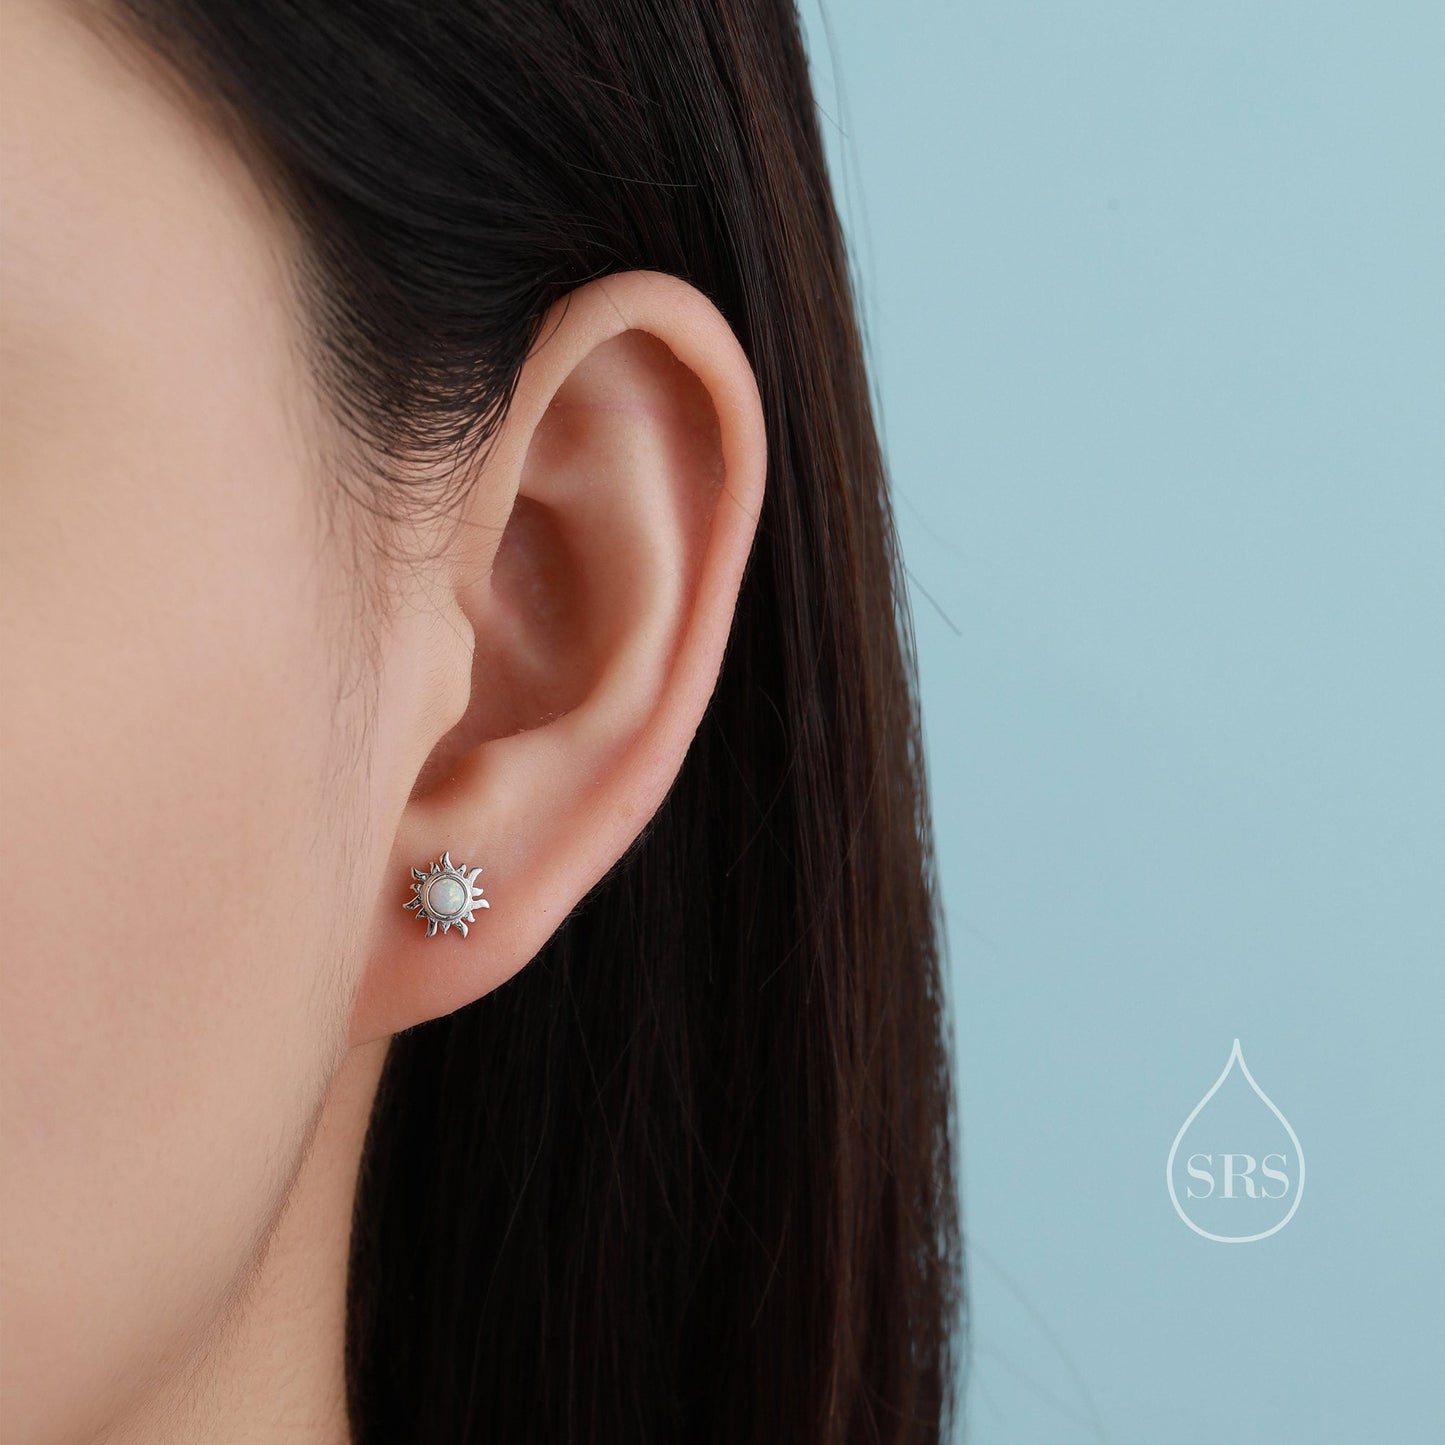 Tiny Little Opal Sun Stud Earrings in Sterling Silver, Silver or Gold, Sun Burst Earrings with Lab Opal, Opal Sunburst Earrings